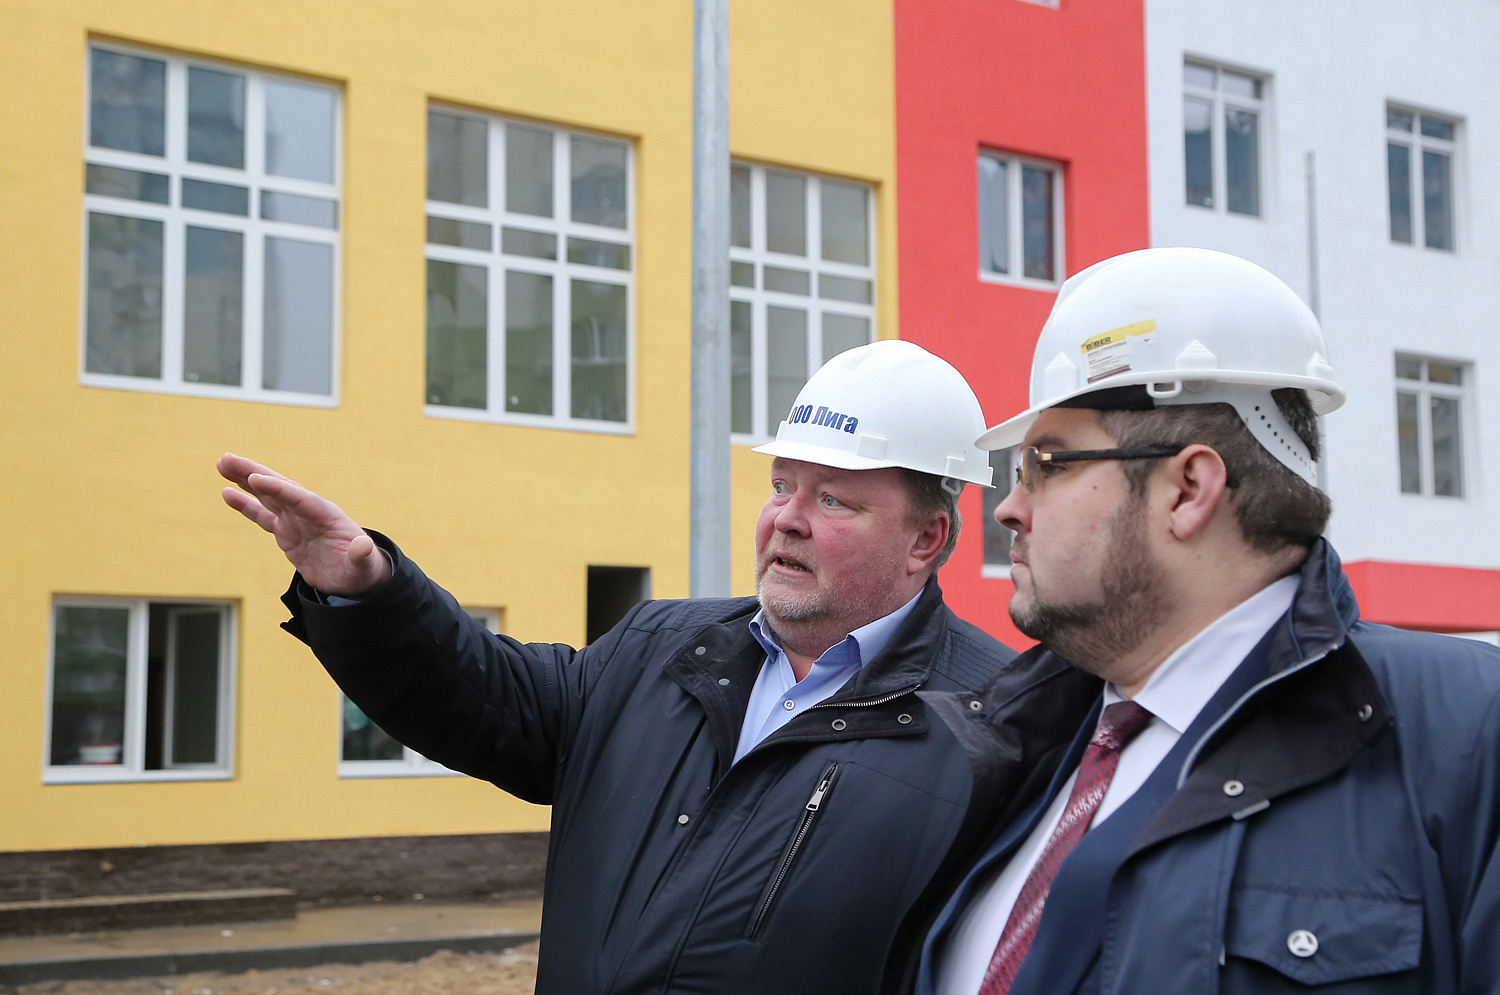 В Нижнем Новгороде определили подрядчиков для возведения двух детсадов